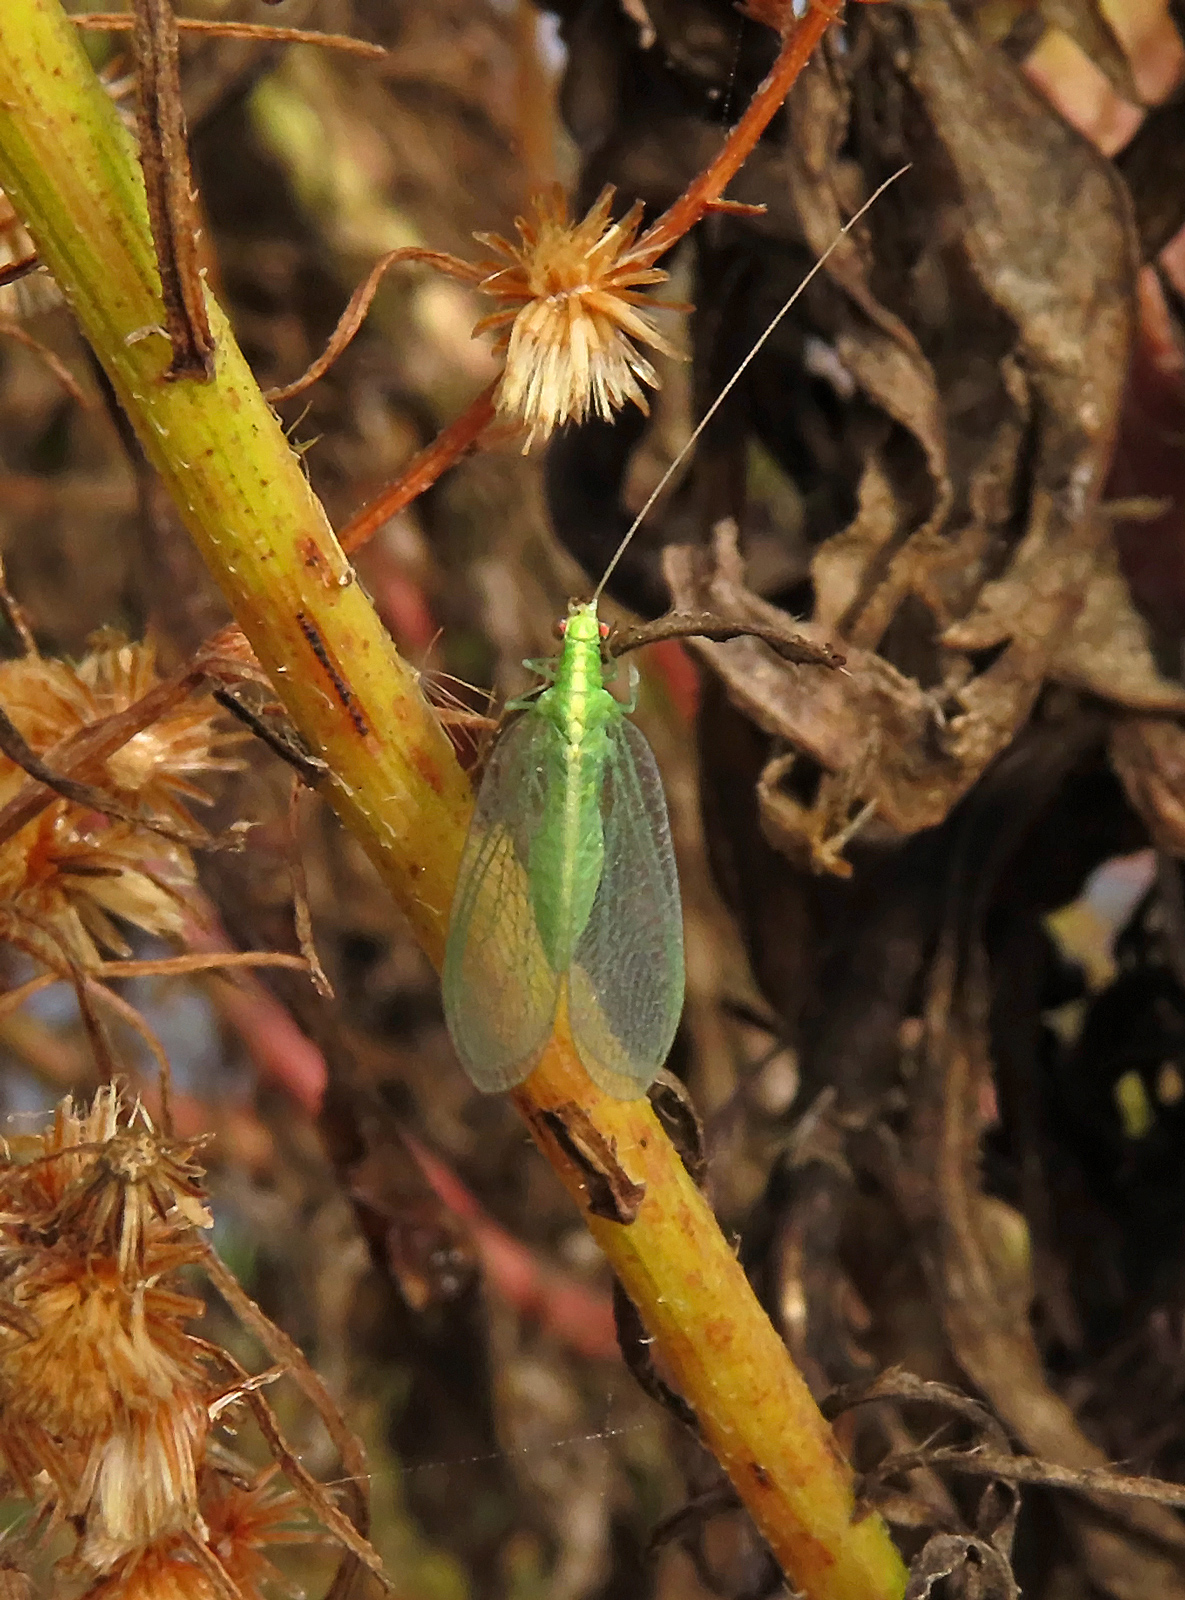 Comanche Green Lacewing (Chrysoperla comanche)